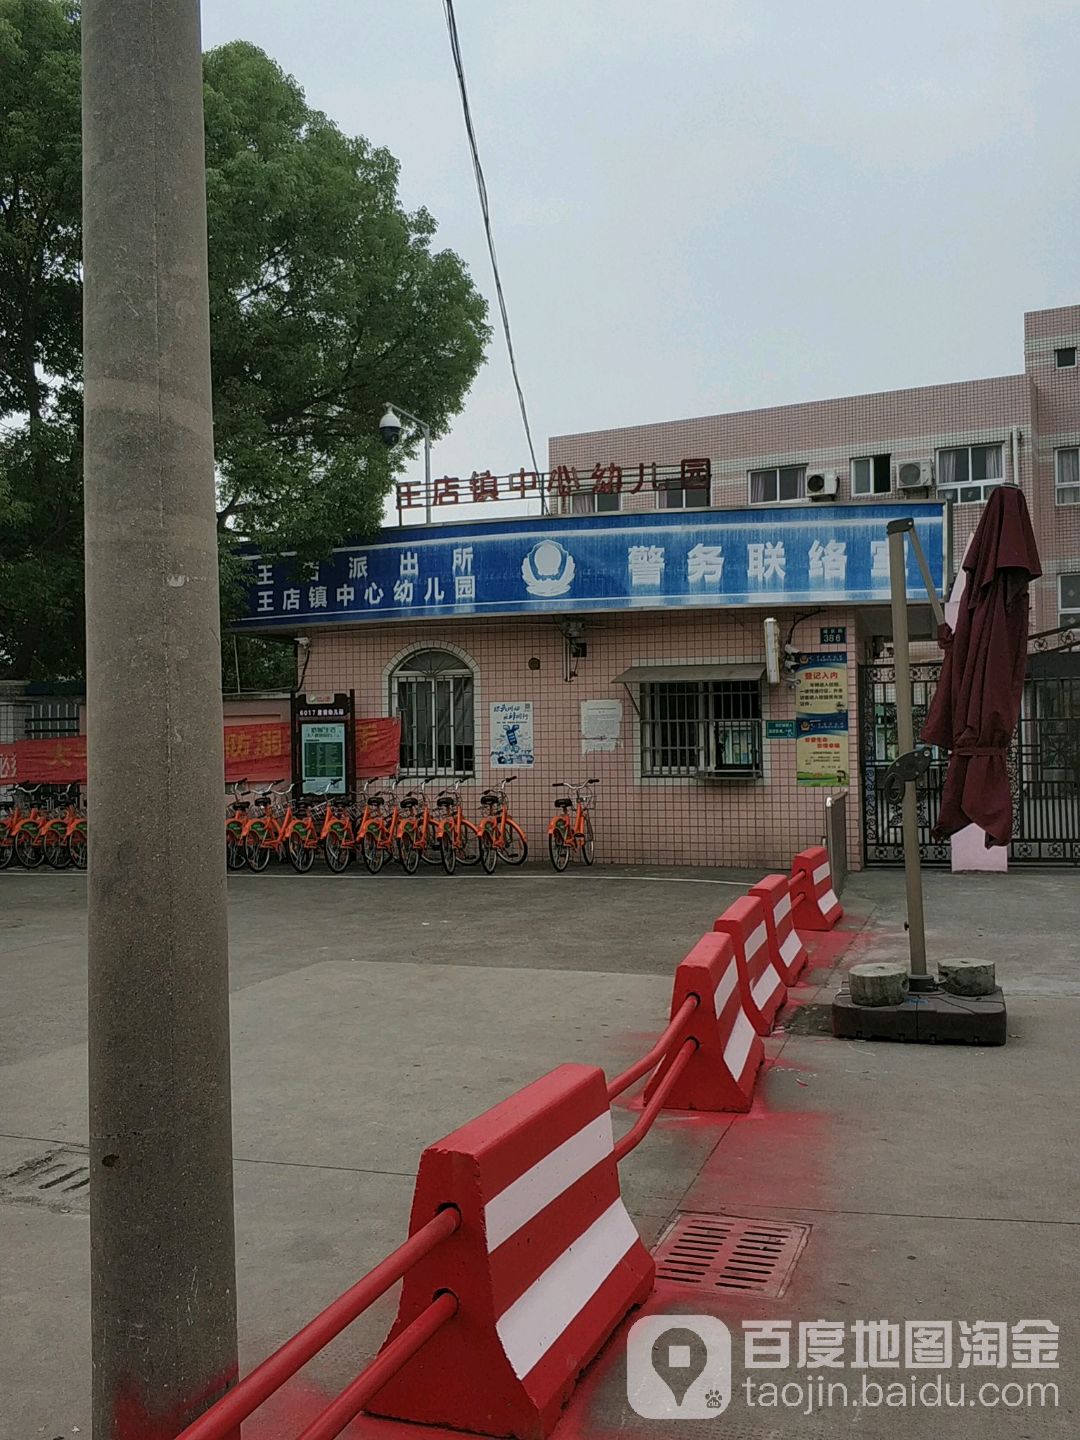 王店镇中心幼儿园(福东路)的图片